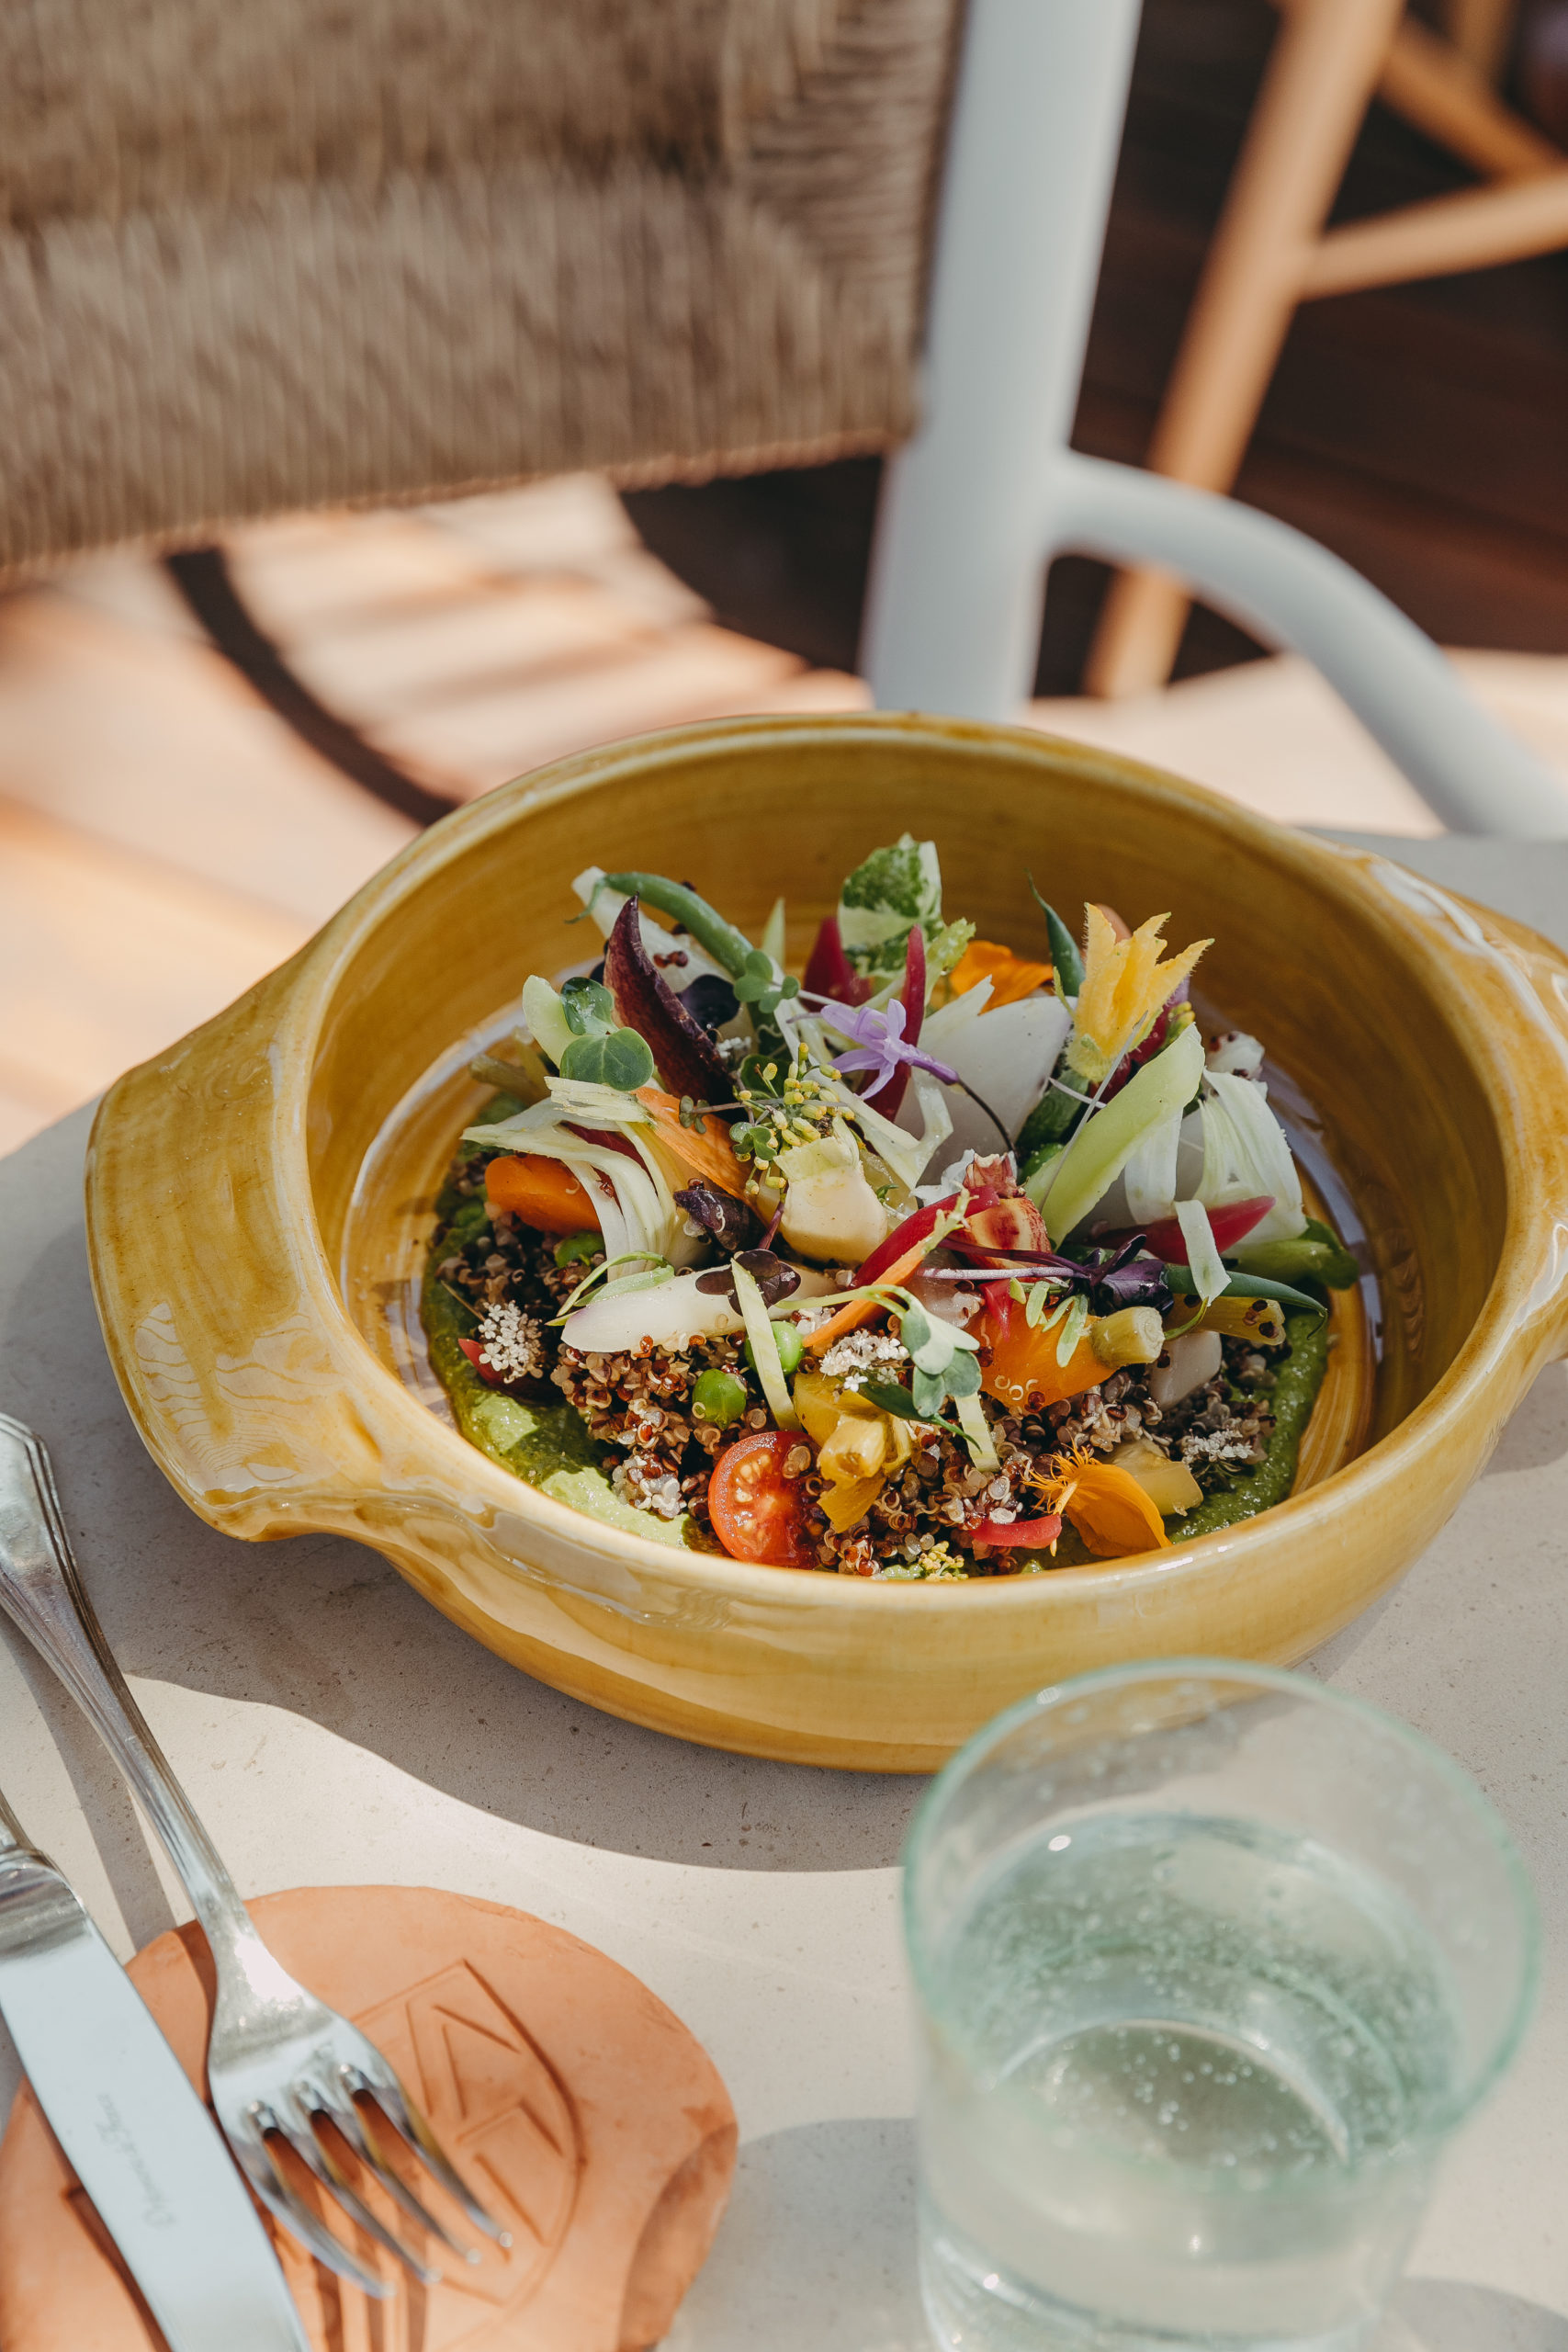 La salade Lily, créée par le chef Vincent Maillard, pour marier gourmandise et bien-être. Elle évolue au fil des saisons et des ingrédients. (LILY OF THE VALLEY / NOVEMBER STUDIO)